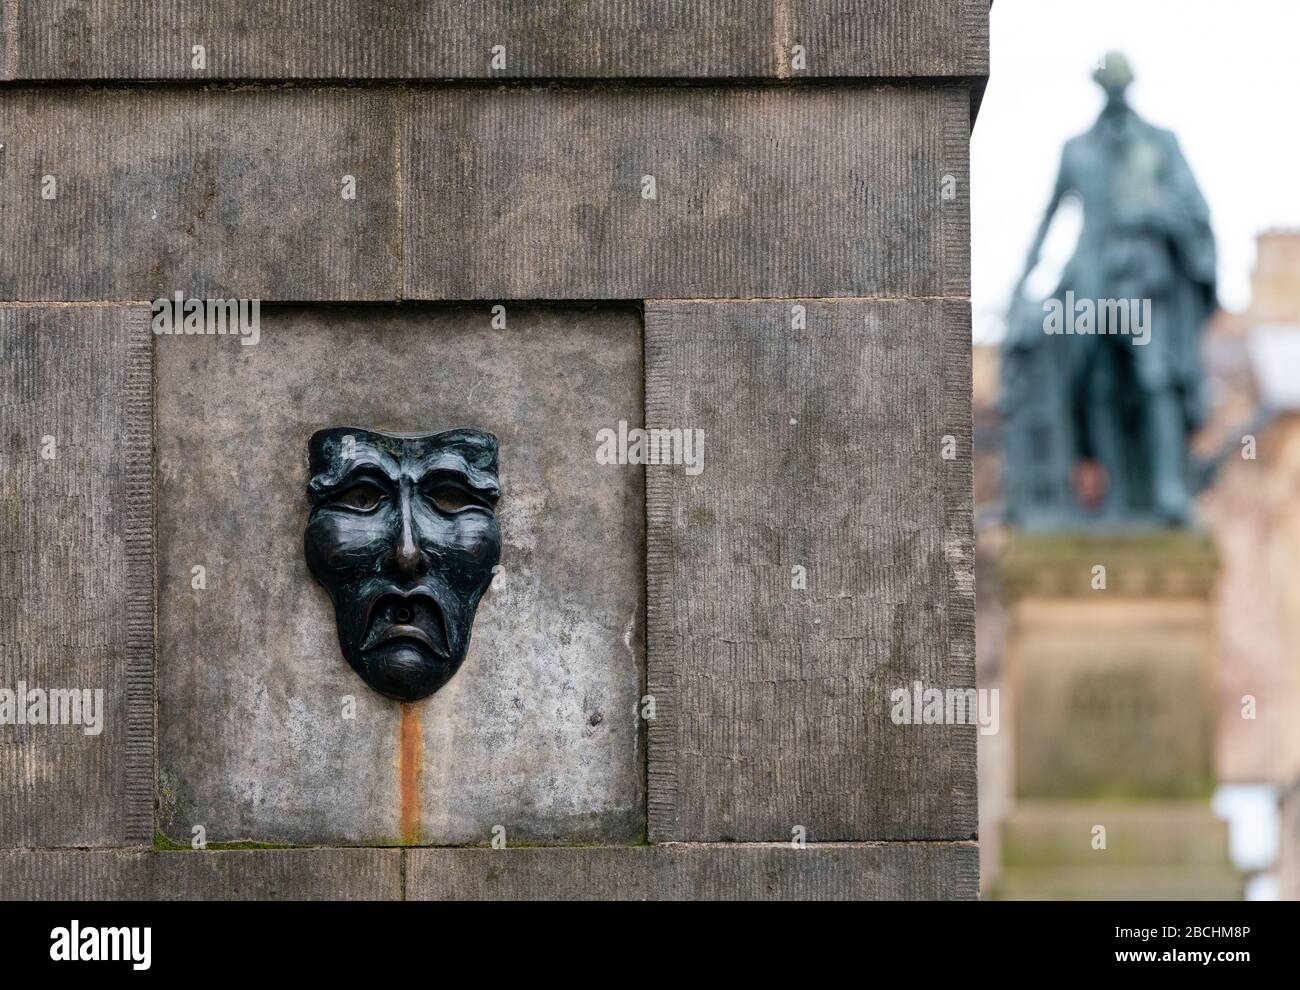 Theatralische Maske Bronzerelation mit traurigem Gesicht auf der High Street Wellhead auf der Royal Mile in Edinburgh, Schottland, Großbritannien, um auf Traurigkeit der Annullierung des Edinburgh Fringe Festivals 2020 hinzuweisen. Stockfoto